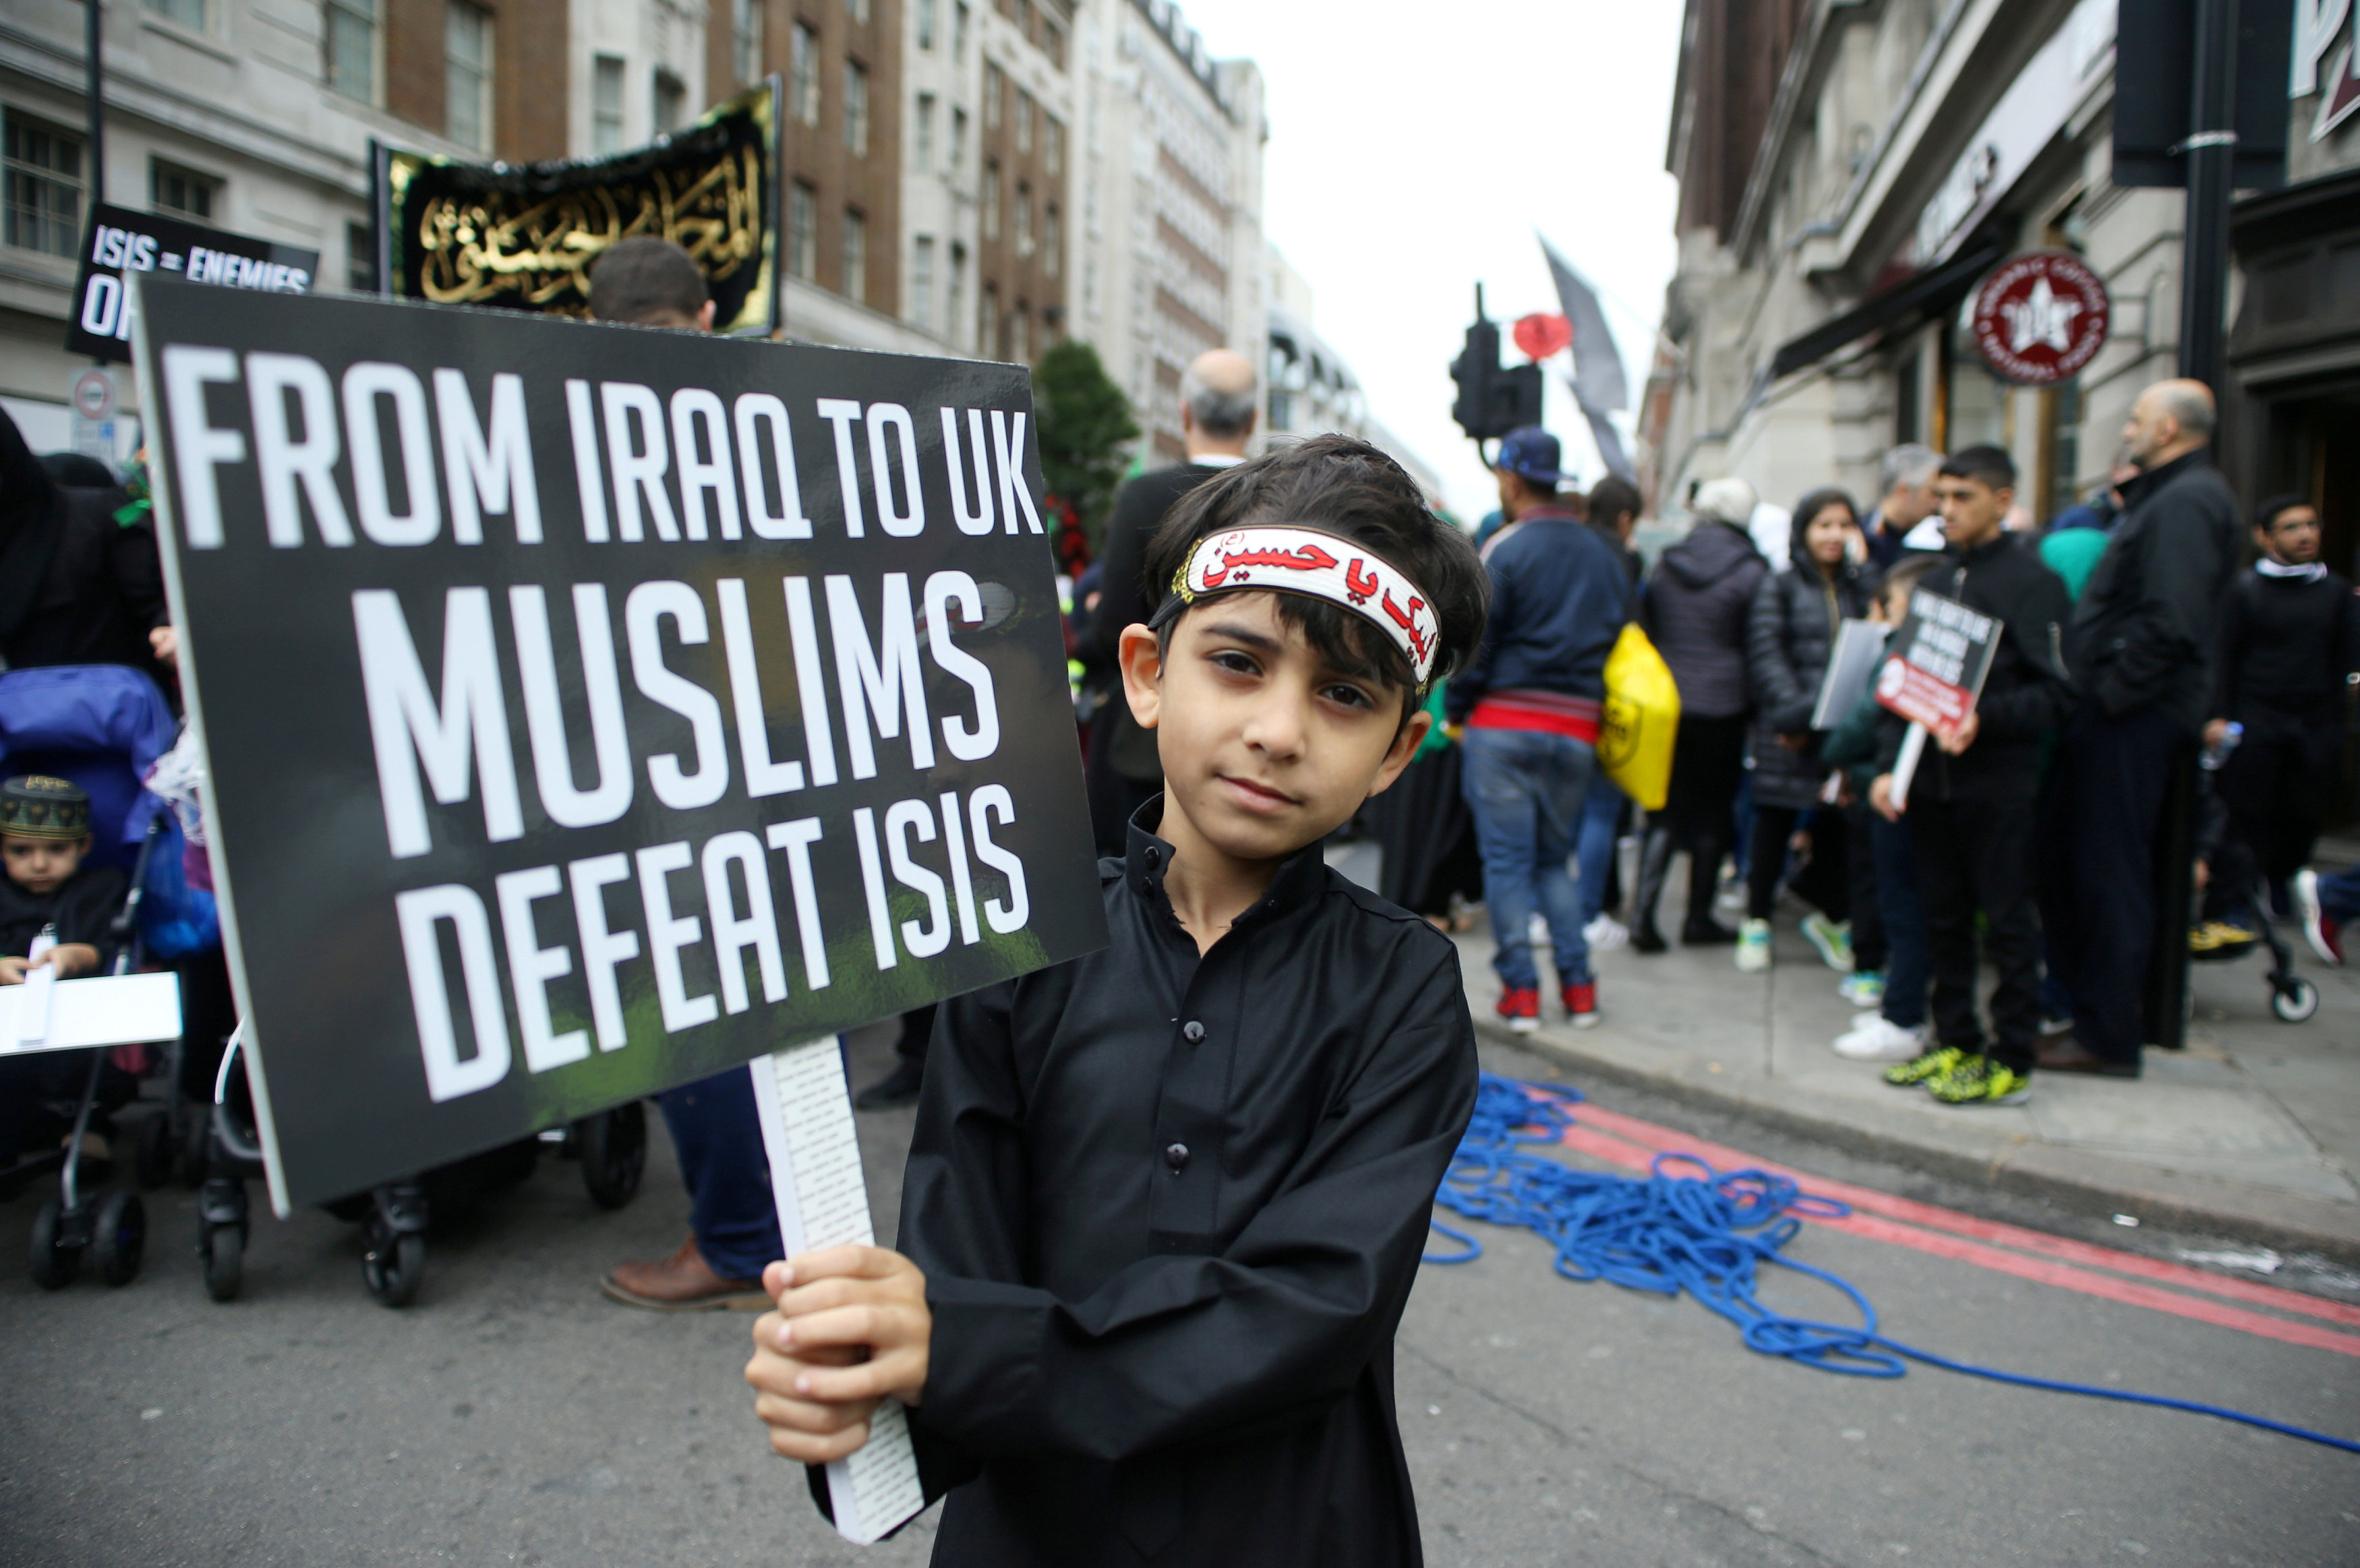 لافتة يحملها طف تقول من العراق لانجلترا المسلمين يحاربون الإرهاب